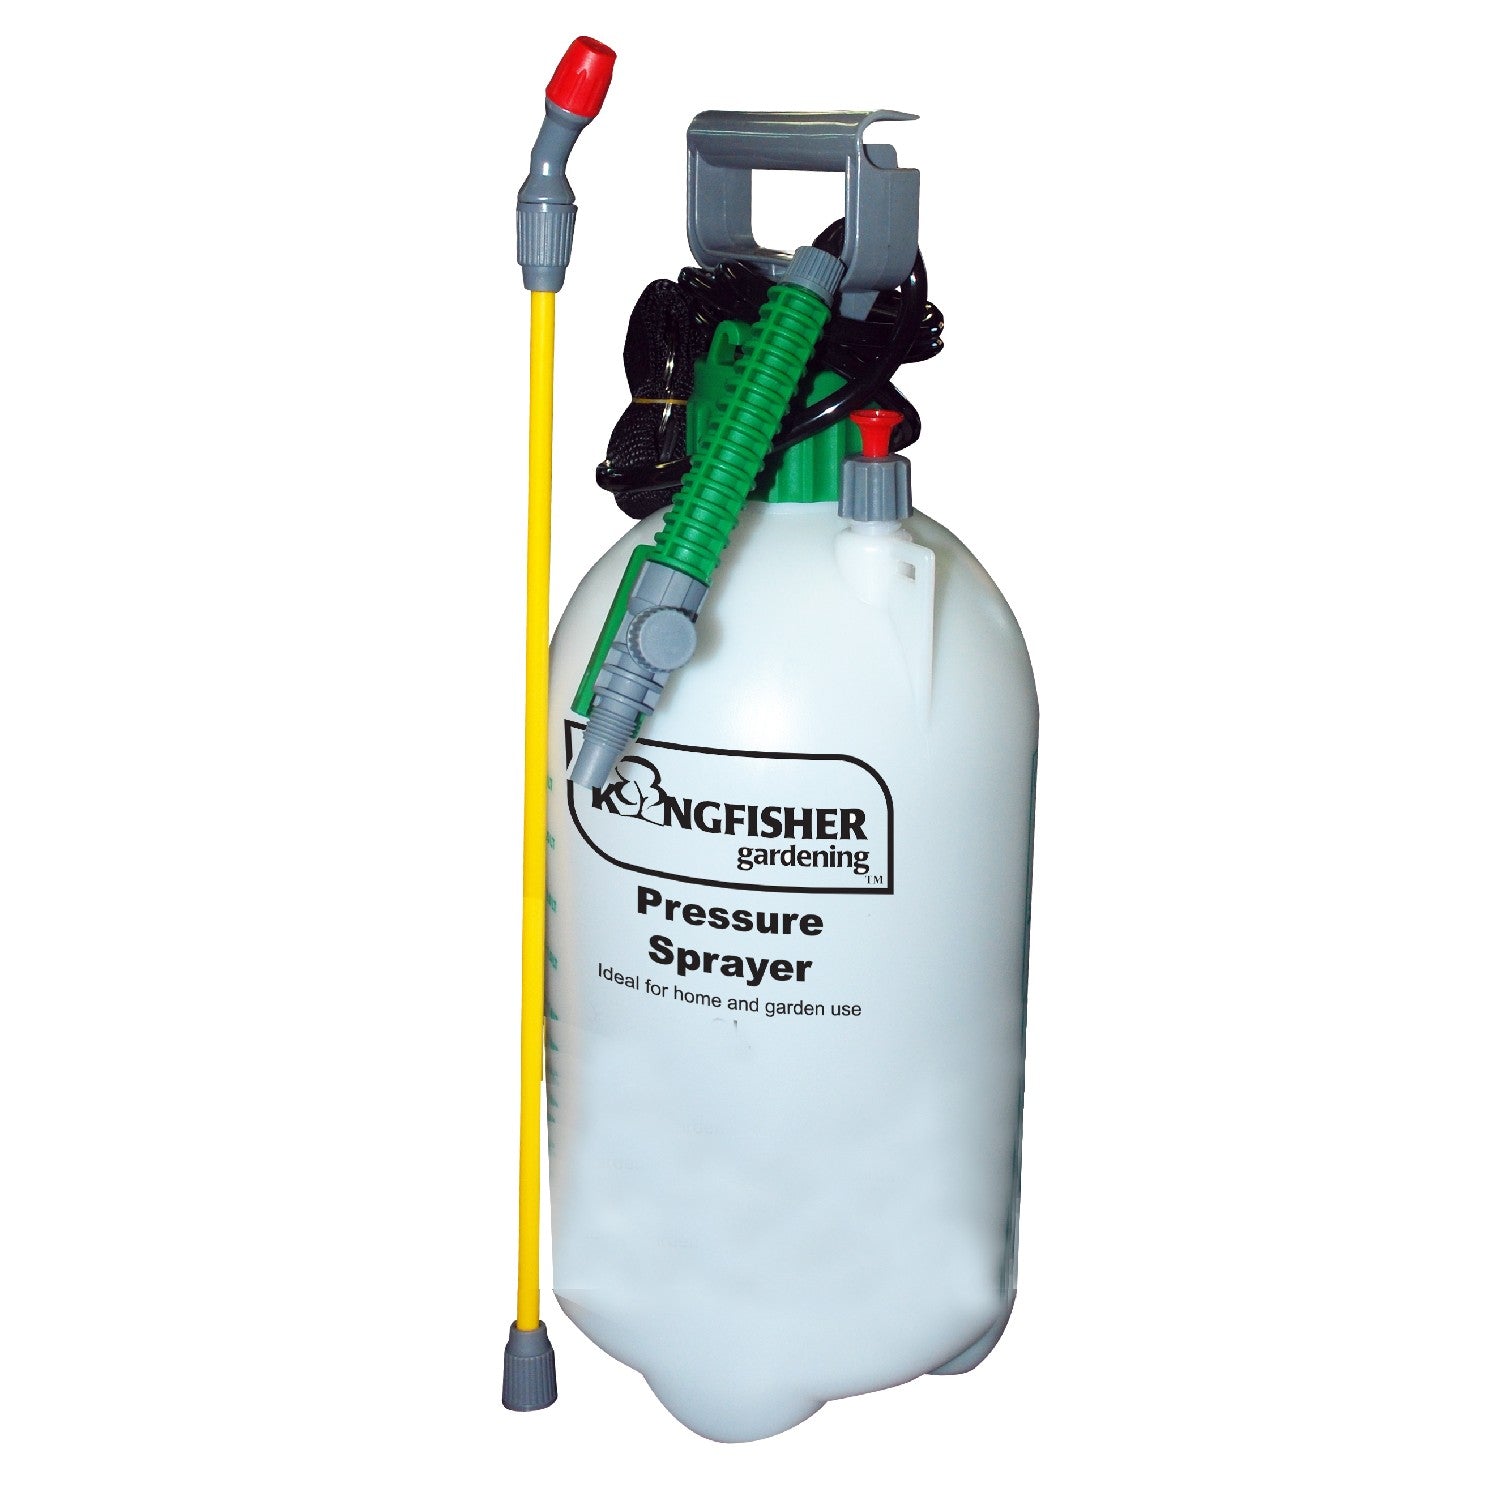 8l Purpose Pressure Garden Sprayer Safety Release Valve